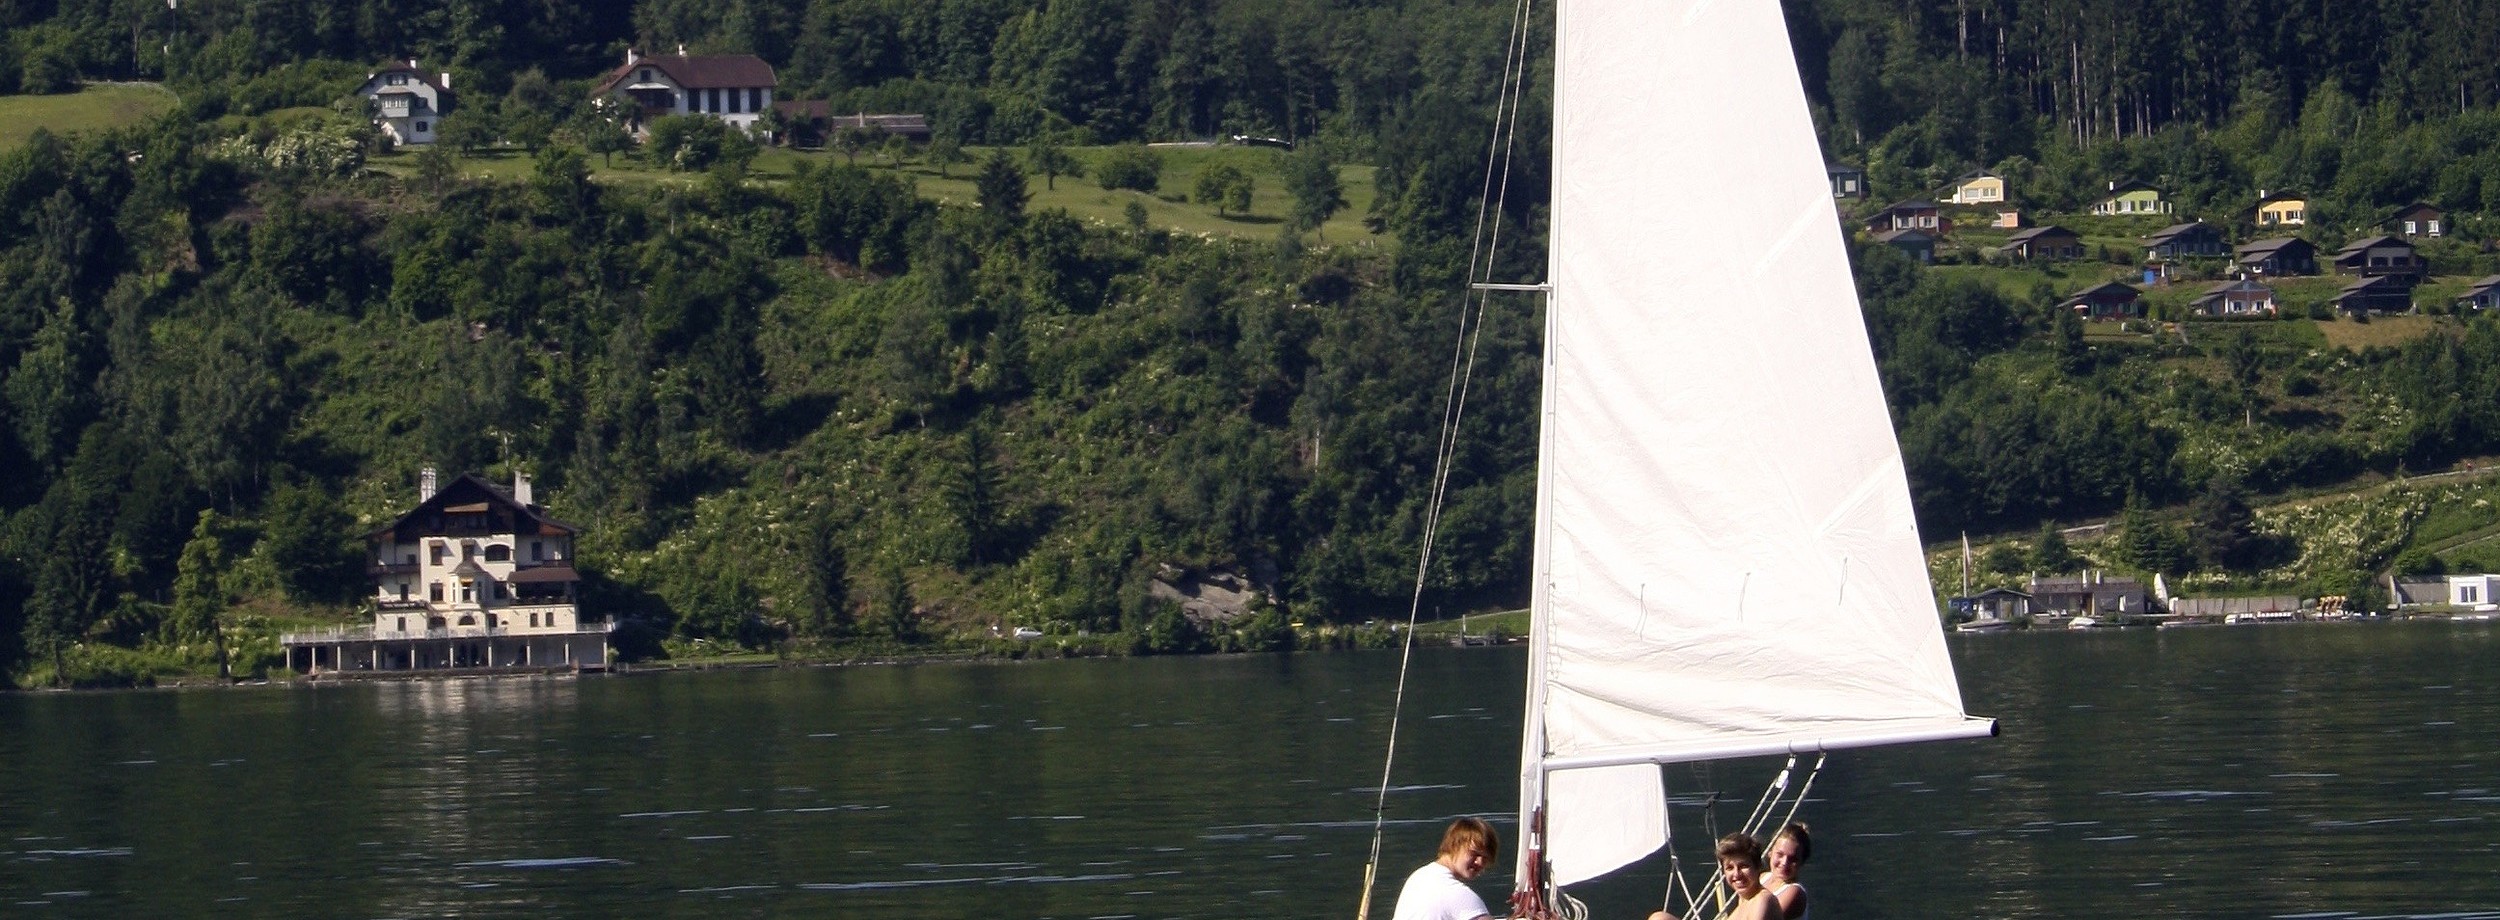 Segelboot am Millstätter See in Kärnten